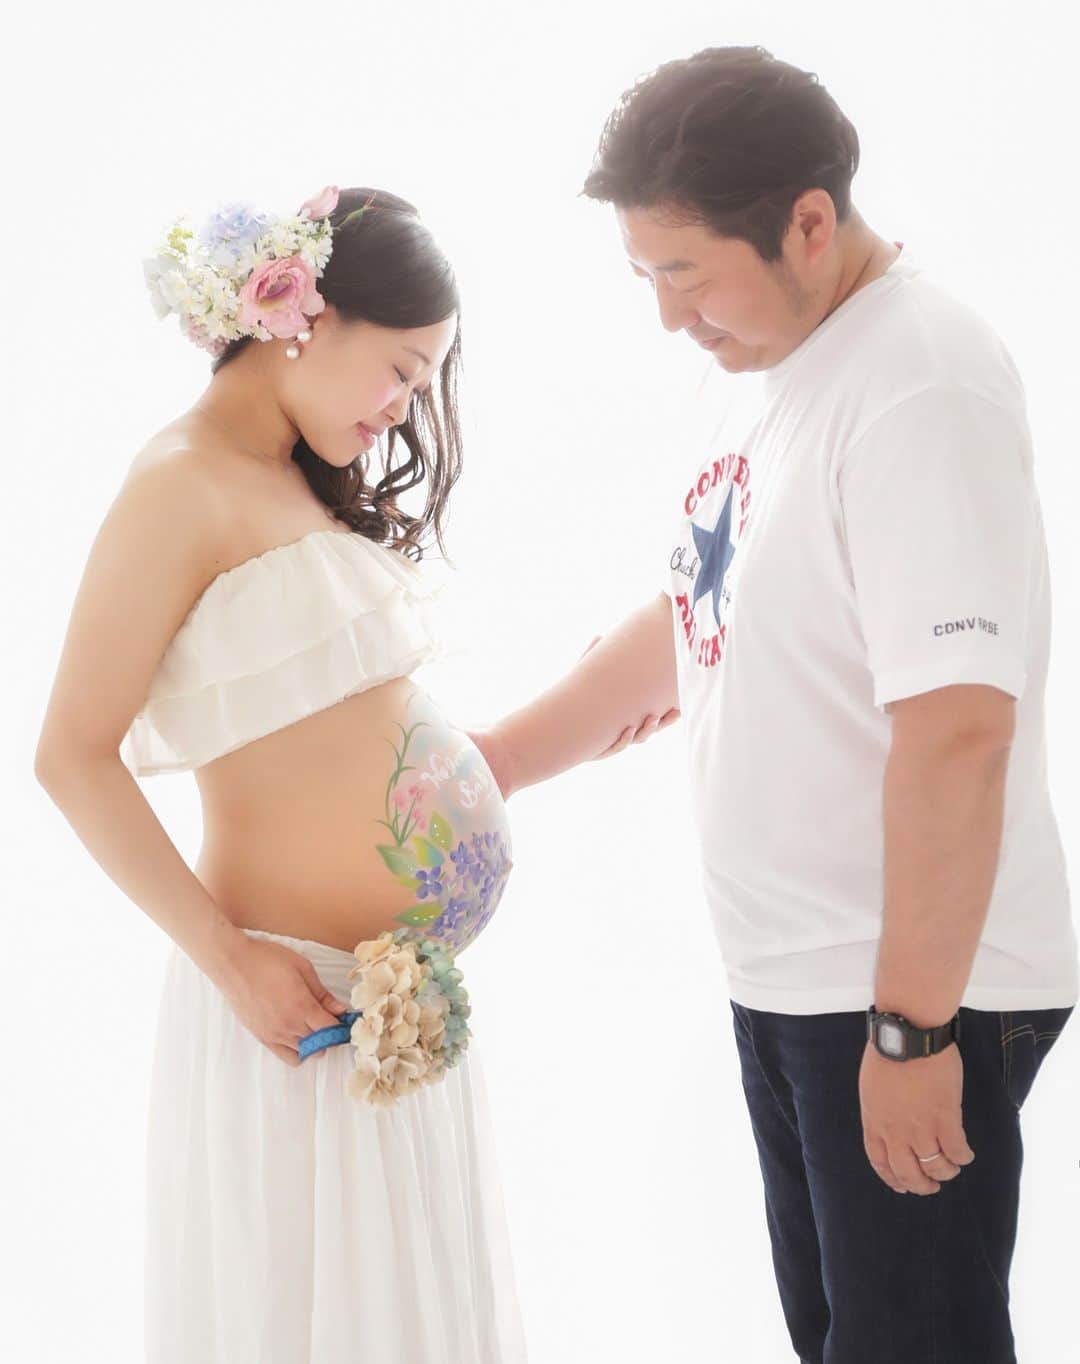 okuyama-photoのインスタグラム：「【妊娠中にしかできない体験です】 新しい家族の誕生を心待ちにしている幸せいっぱいの姿を、記念に残しませんか？ お腹の大きな時にしか撮影できないマタニティフォトやベリーペイント体験。 思い出深い記念撮影をご希望の方にはとてもおすすめです。  マタニティ用貸衣装や料金などの詳細はHPをご覧くださいね。  #写真のオクヤマ #写真館 #写真スタジオ #青森フォトスタジオ #十和田フォトスタジオ #マタニティ #マタニティ撮影 #マタニティフォト #マタニティ写真 #プレママ #ベリーペイント #妊婦 #記念写真 #家族写真 #ファミリーフォト #七戸町 #十和田市」